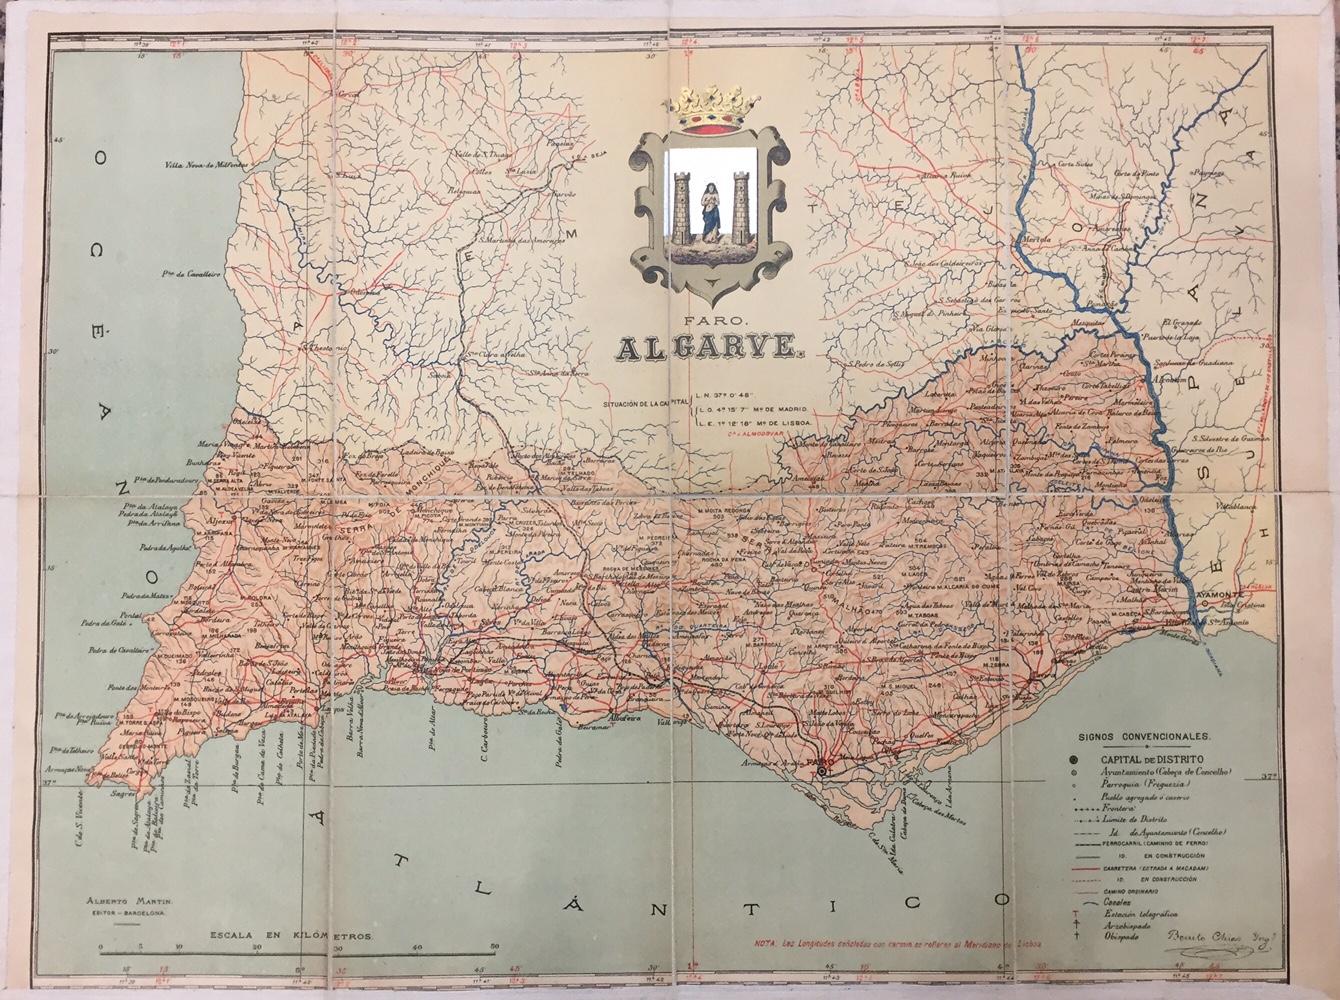 mapa de 1902 de algarve - faro, portugal. de 37 - Comprar Mapas